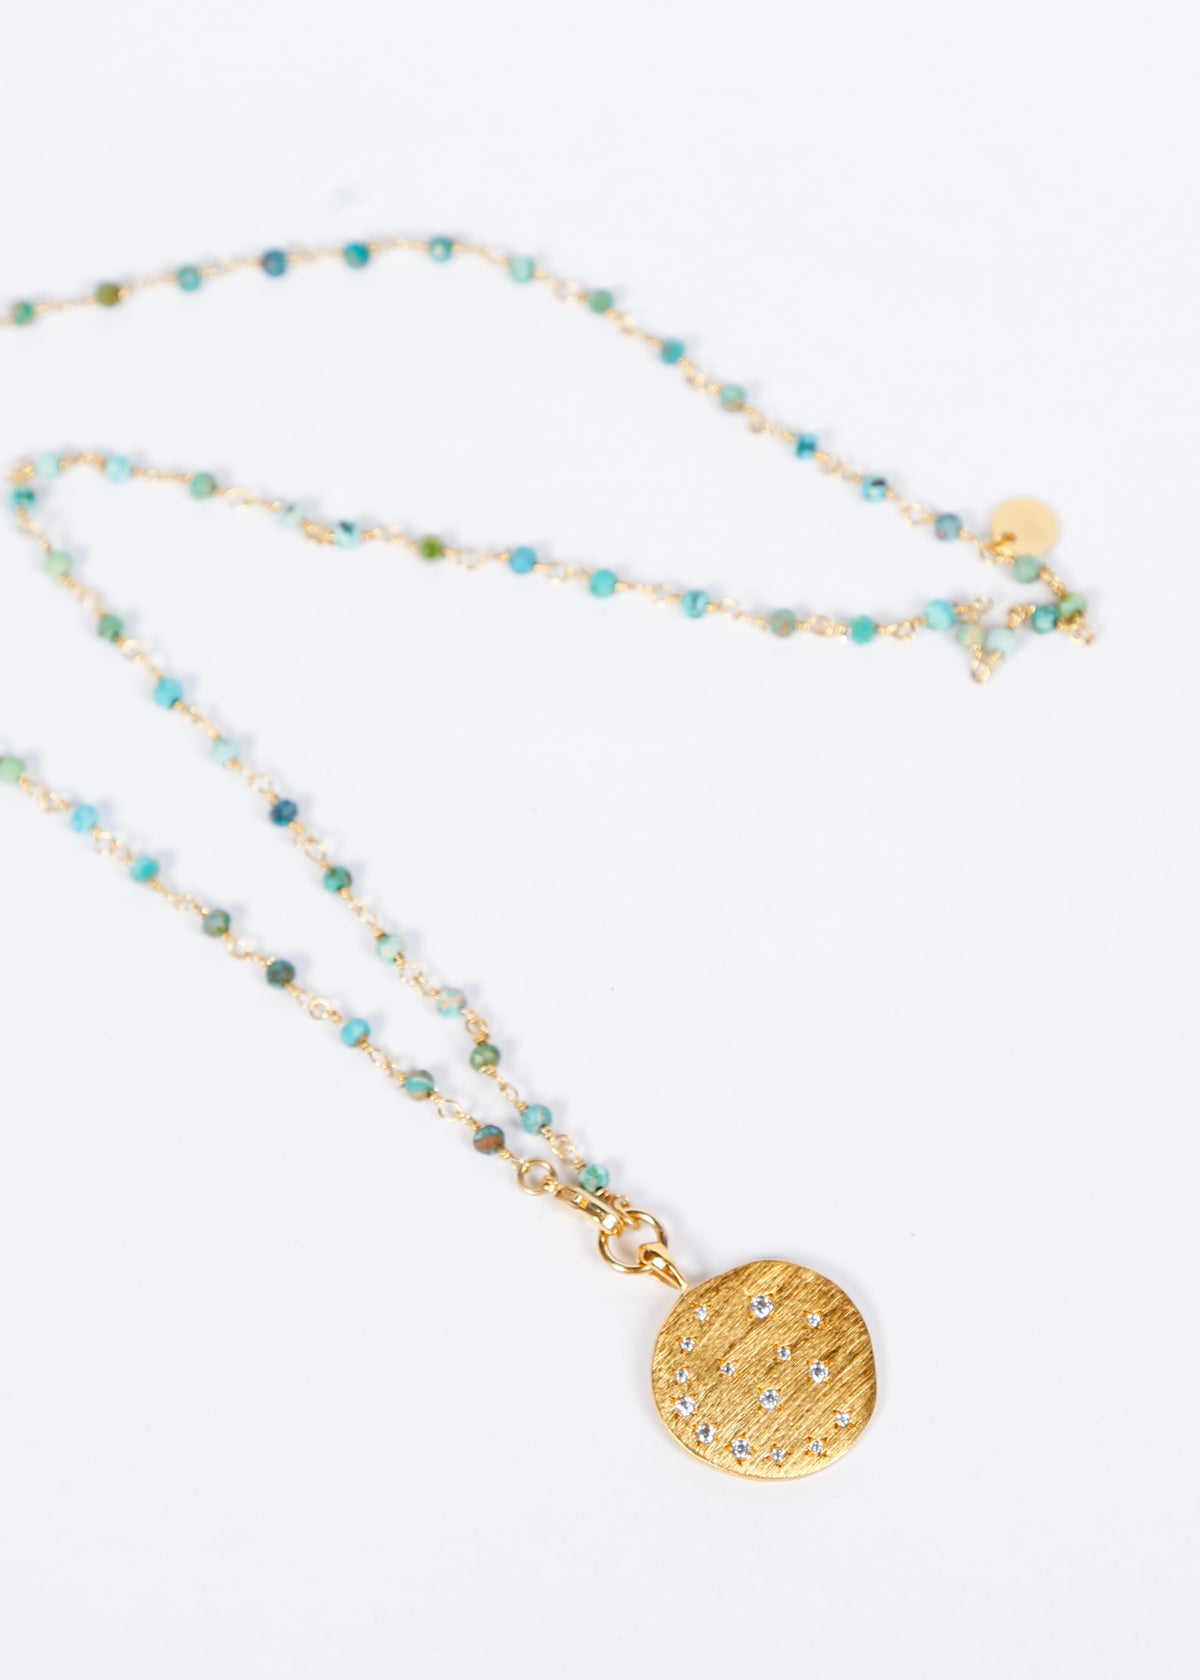 HANKA Happy  Necklace in African Turquoise, Moonlight Zirconium